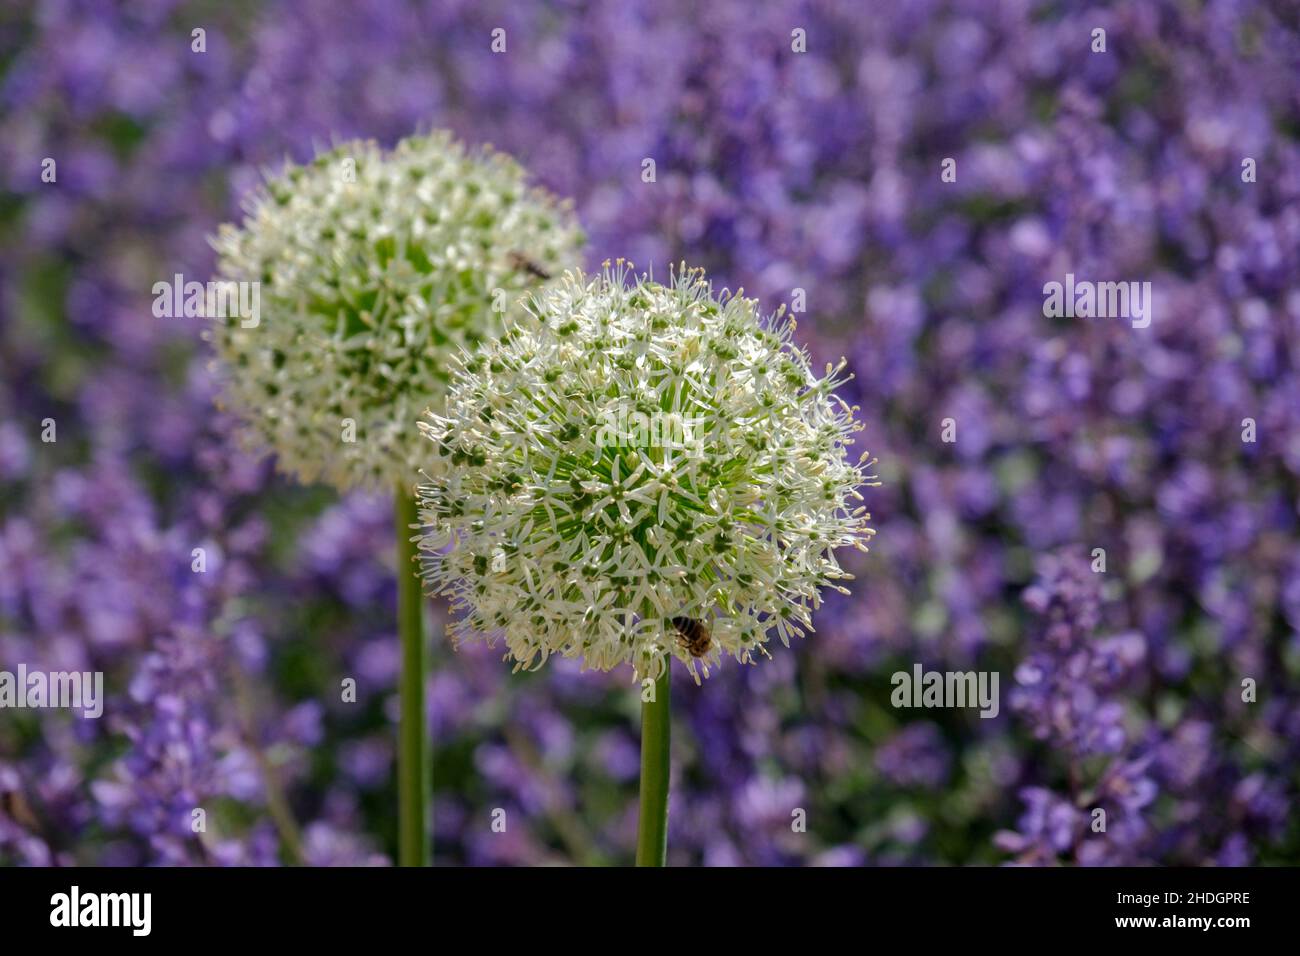 allium flower, allium flowers Stock Photo